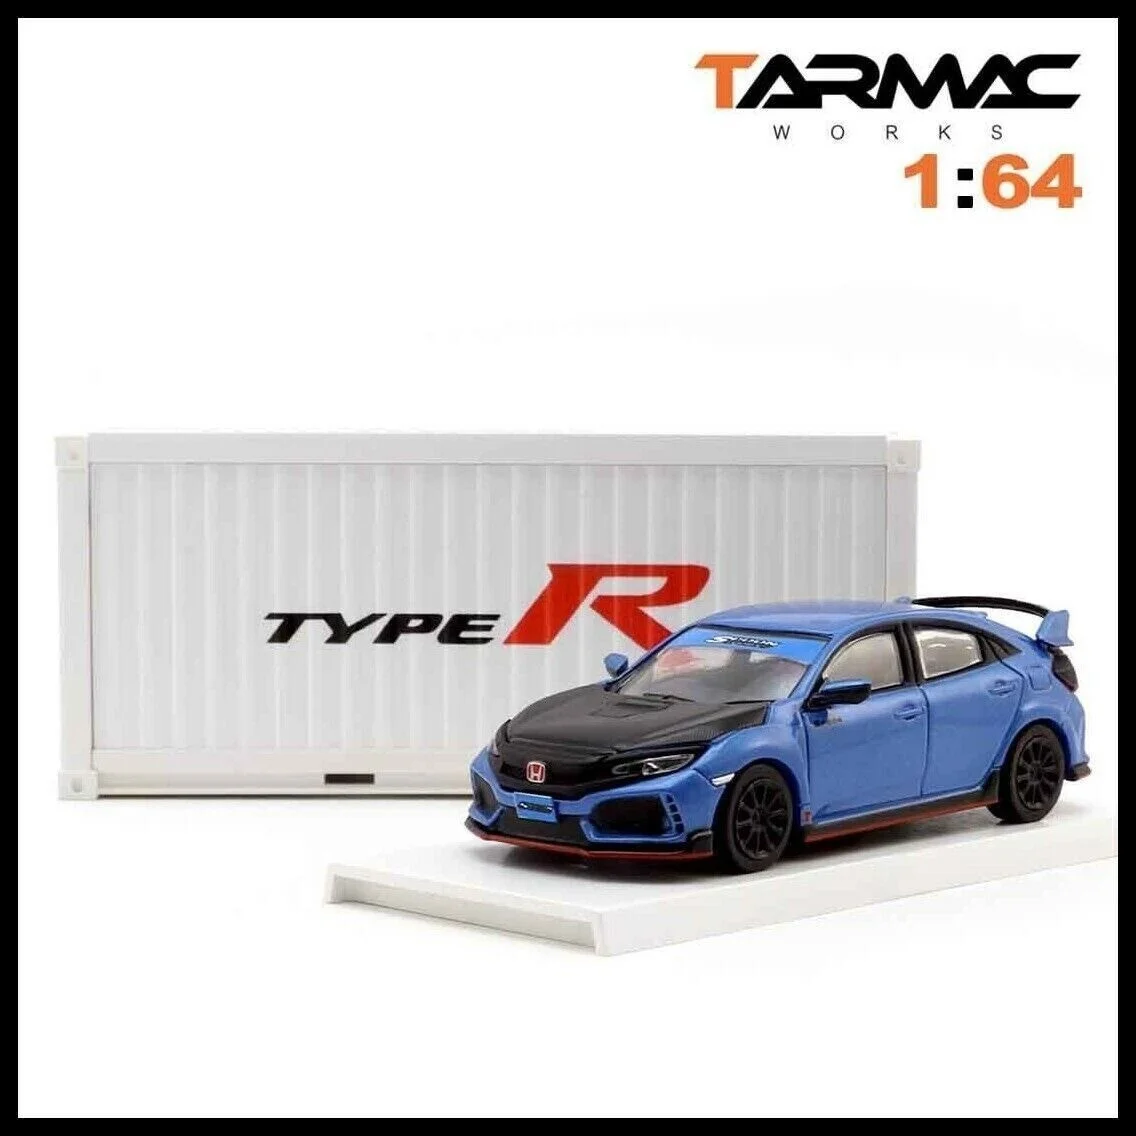 

1:64 Tarmac works Civic FK8 Тип R с контейнером, Отрегулированная ложкой, литая модель автомобиля, коллекция, ограниченная серия, хобби-игрушки